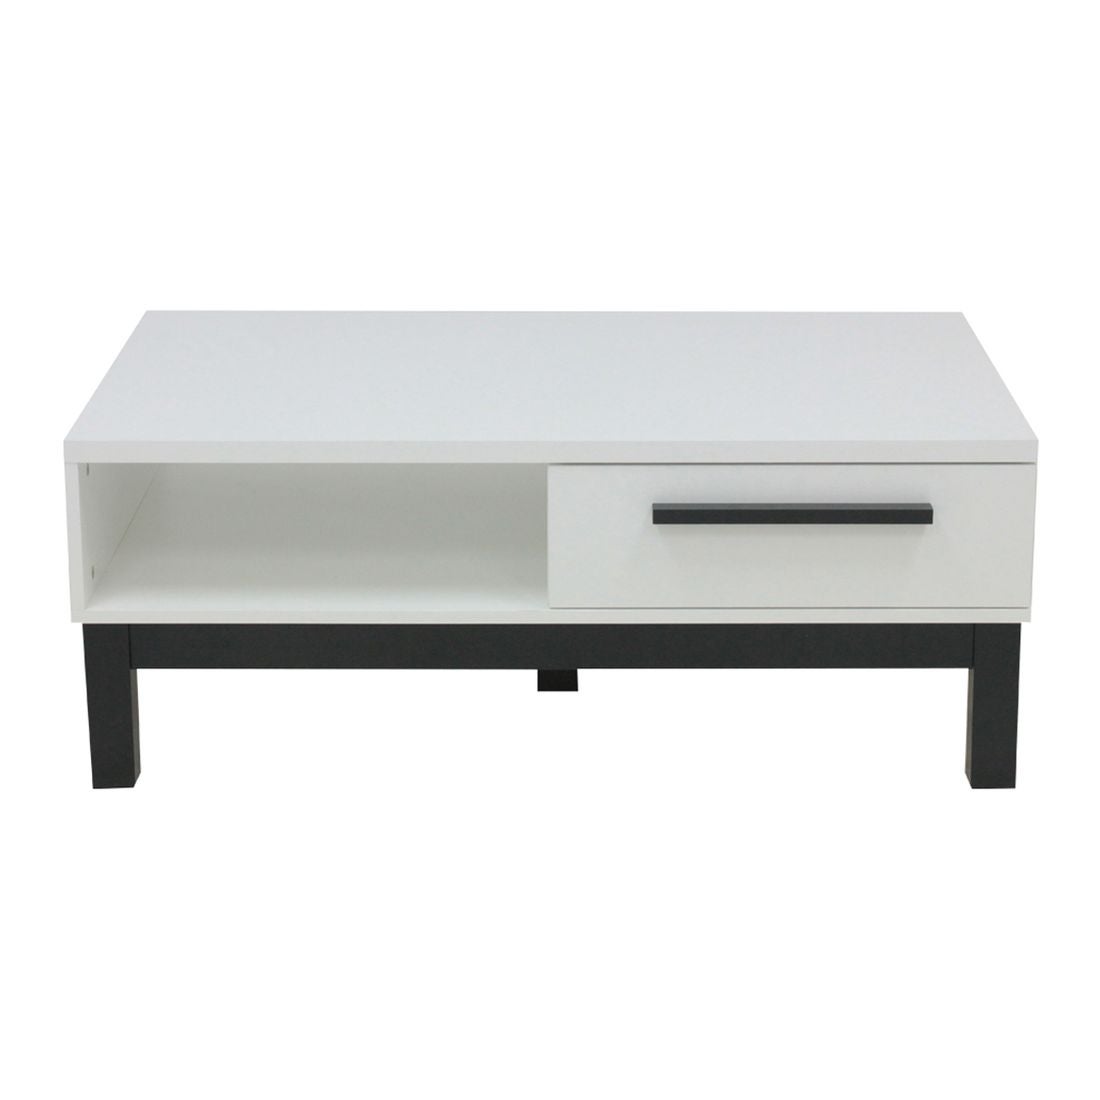 โต๊ะกลาง โต๊ะกลางไม้ล้วน รุ่น Sunza สีสีขาว-SB Design Square